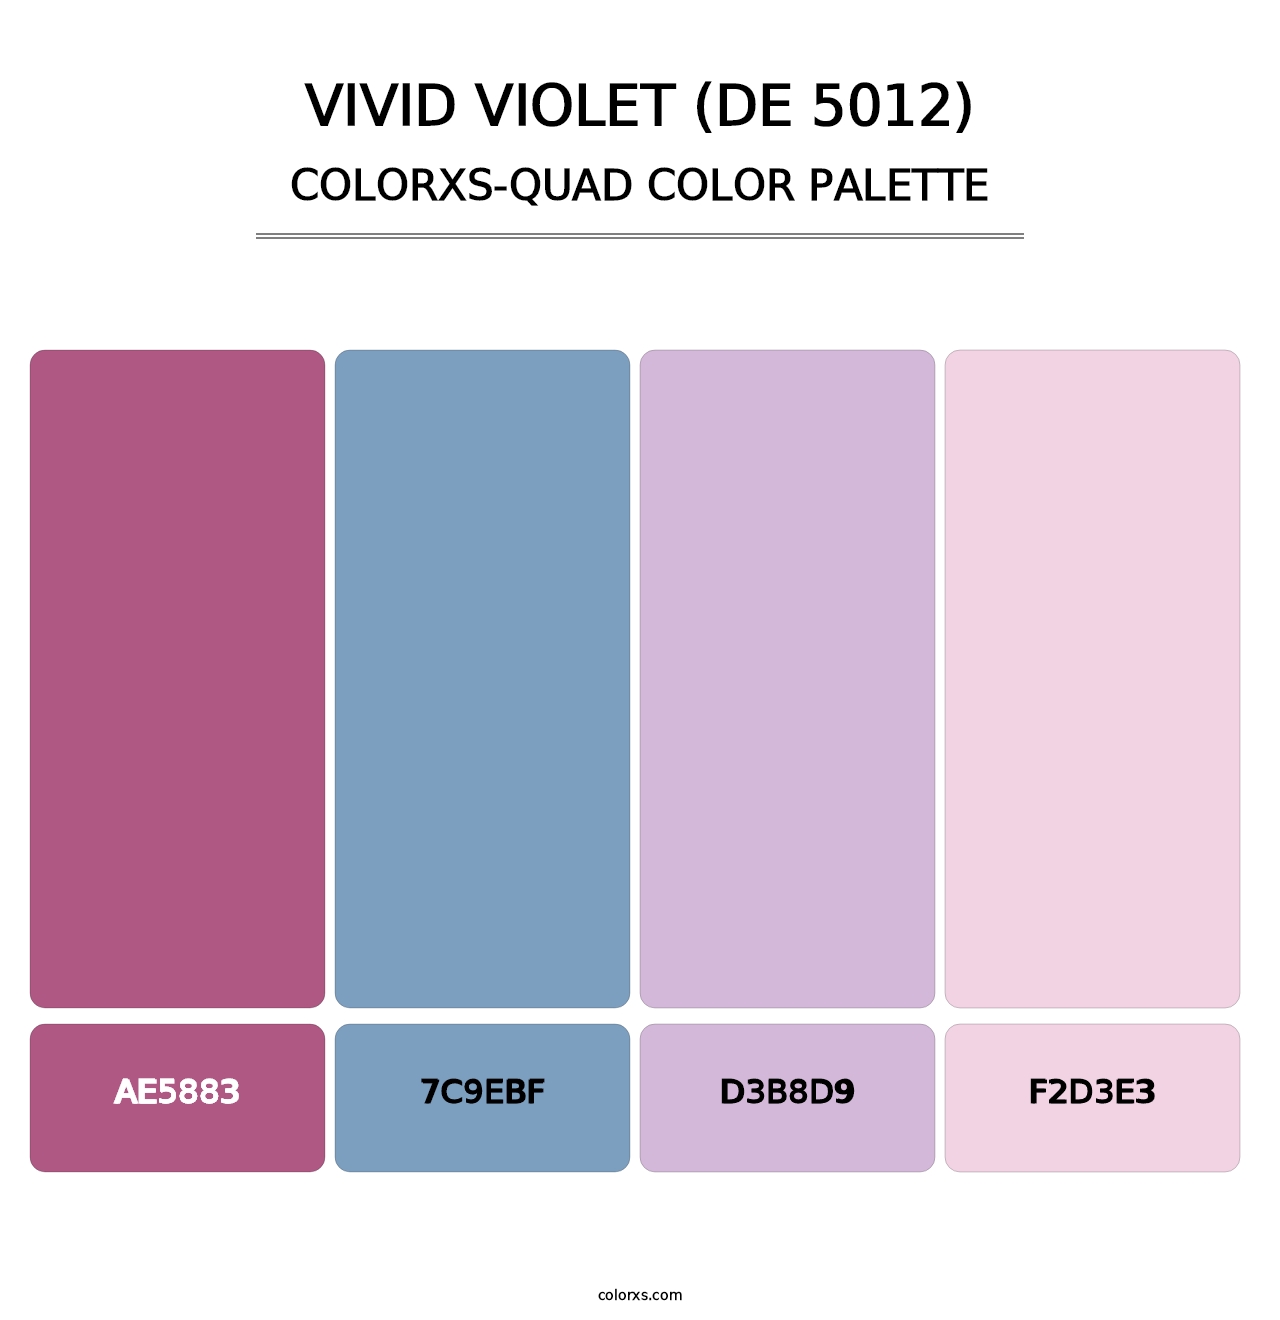 Vivid Violet (DE 5012) - Colorxs Quad Palette